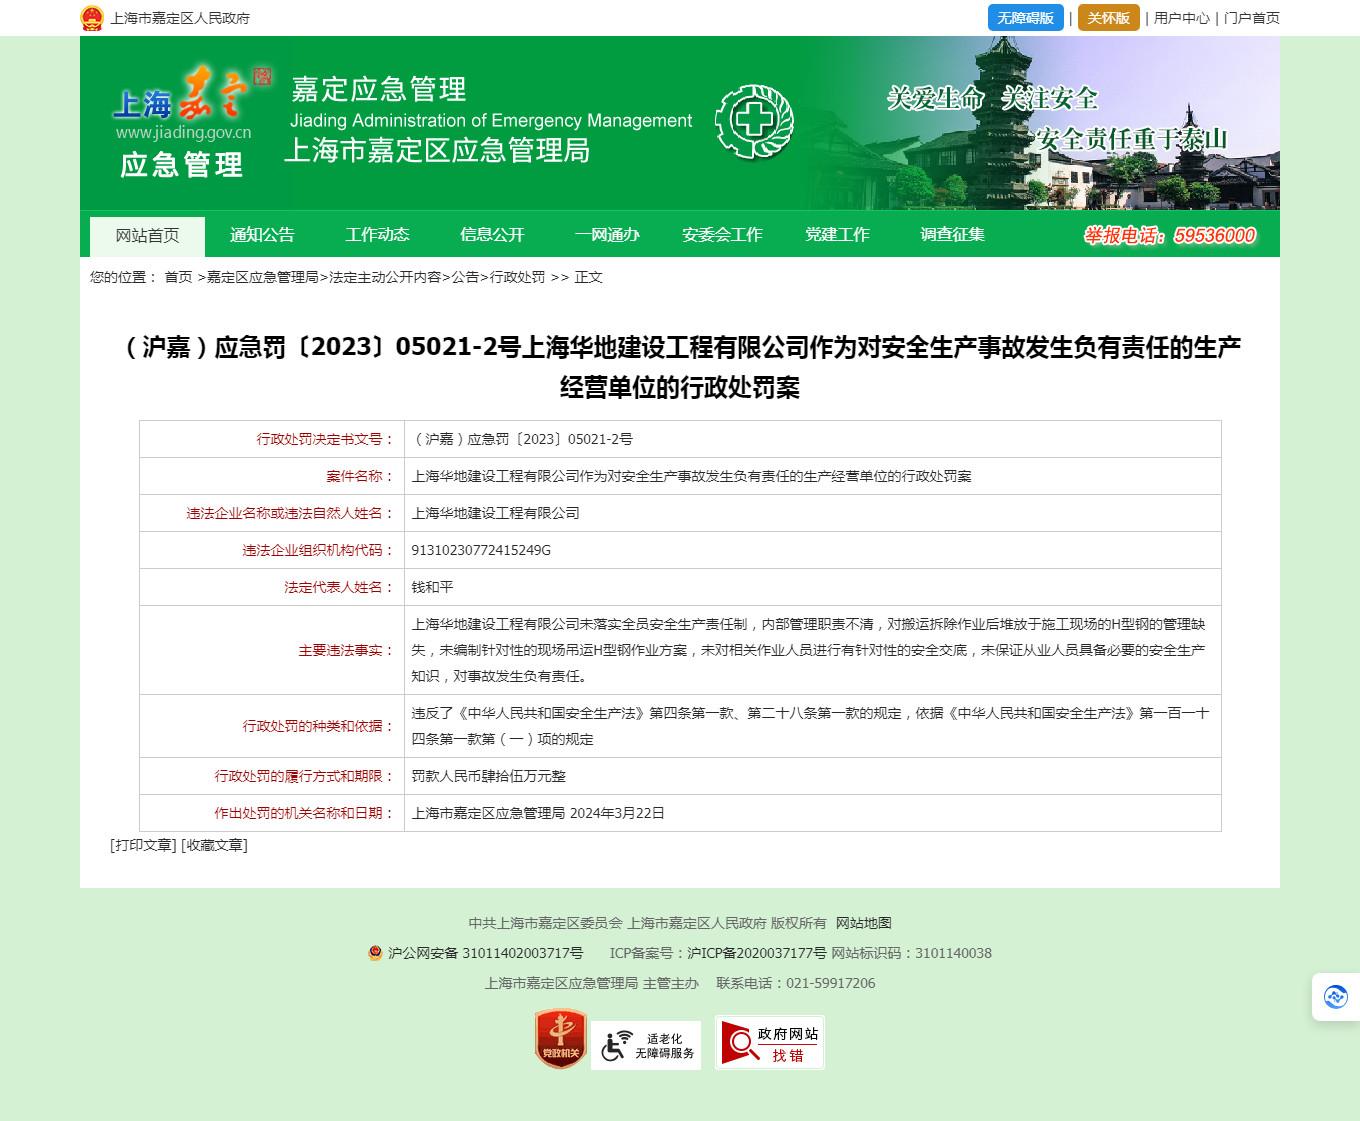 上海华地建设工程有限公司因对安全生产事故发生负有责任被罚45万元